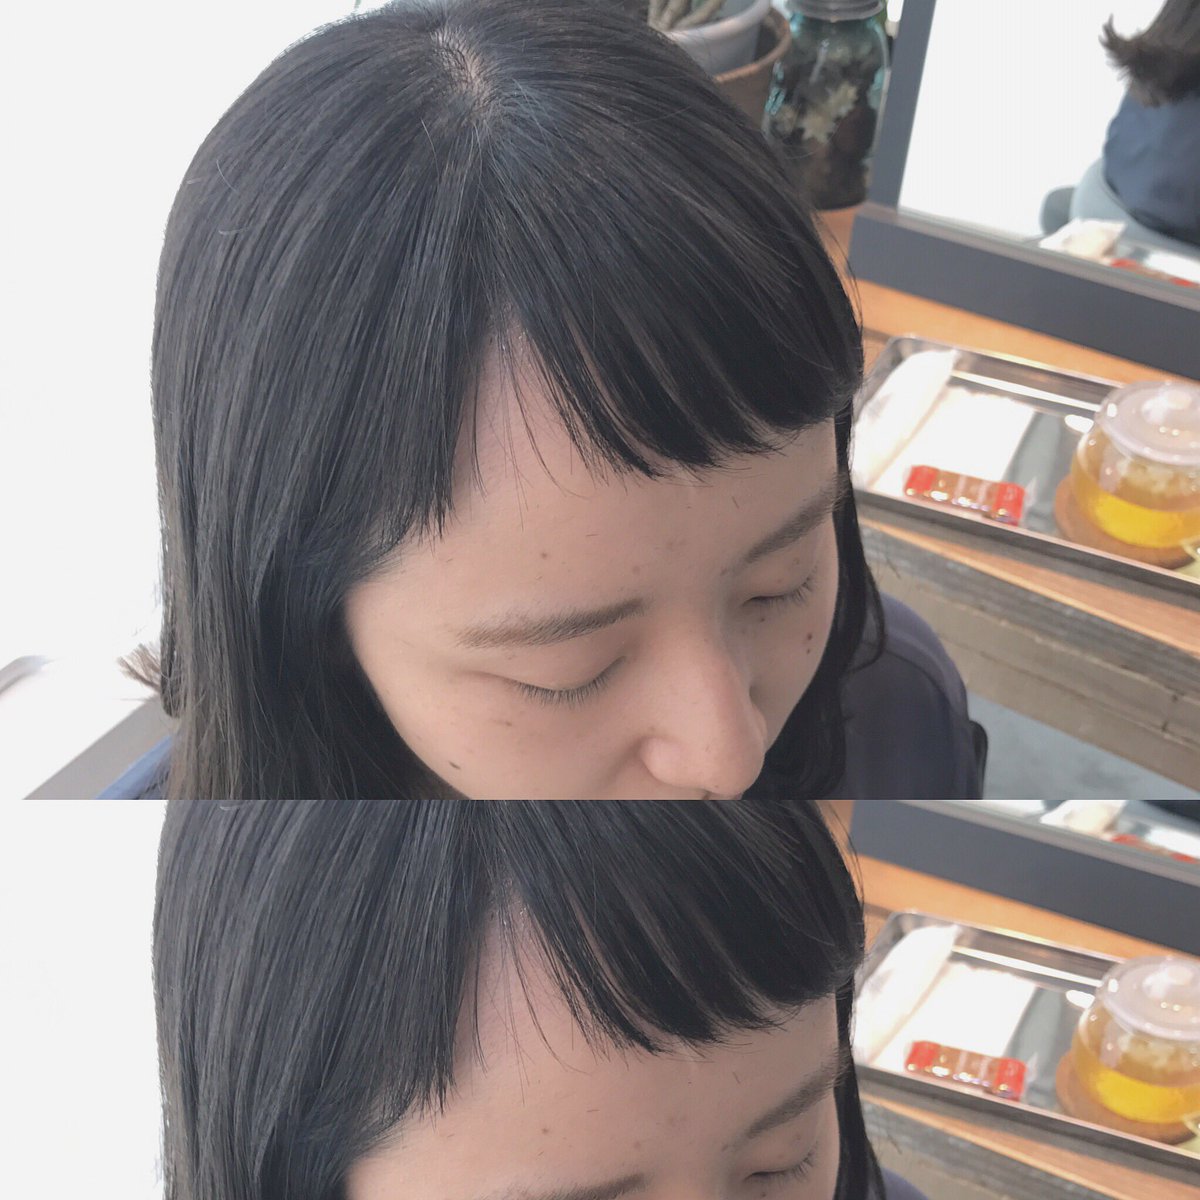 Tsukasa Twitter પર お客様スタイル ショートバング可愛すぎる 前髪に個性がある人って素敵 いろいろな前髪作ります 前髪 ショートバング 斜めバング パッツン